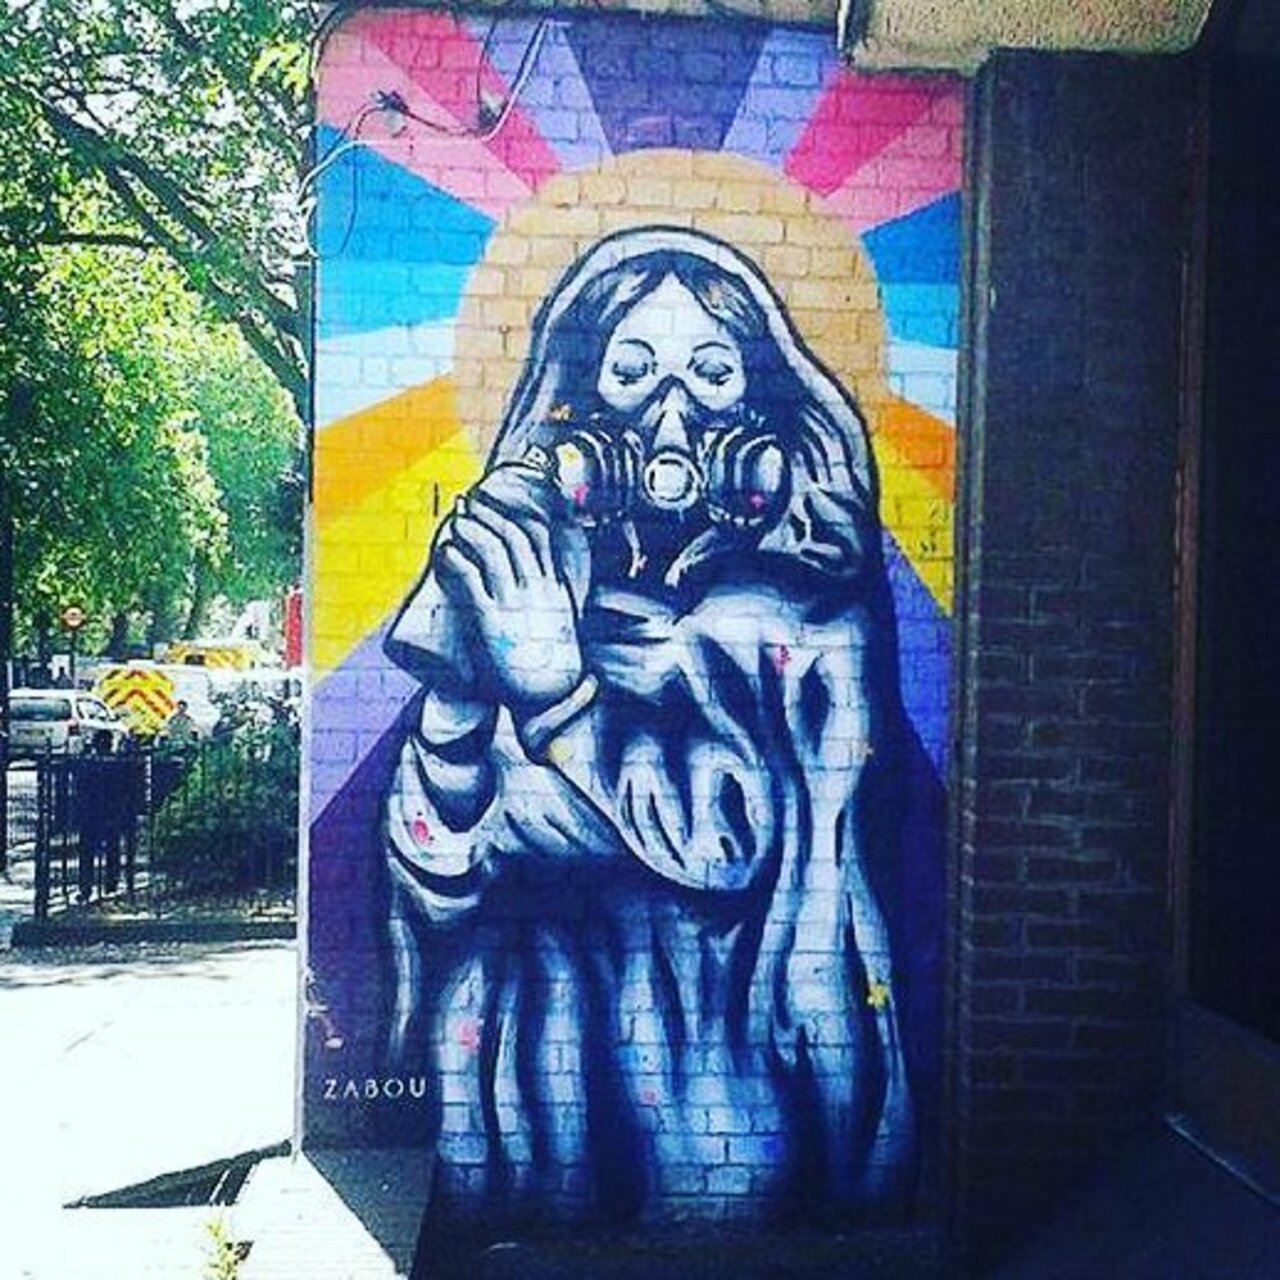 #zabouartist #streetart #art #graffiti #wallart #urbanart #zabou #londonstreetart #paris #streetartlondon #streetar… https://t.co/UwGbNvj6sl